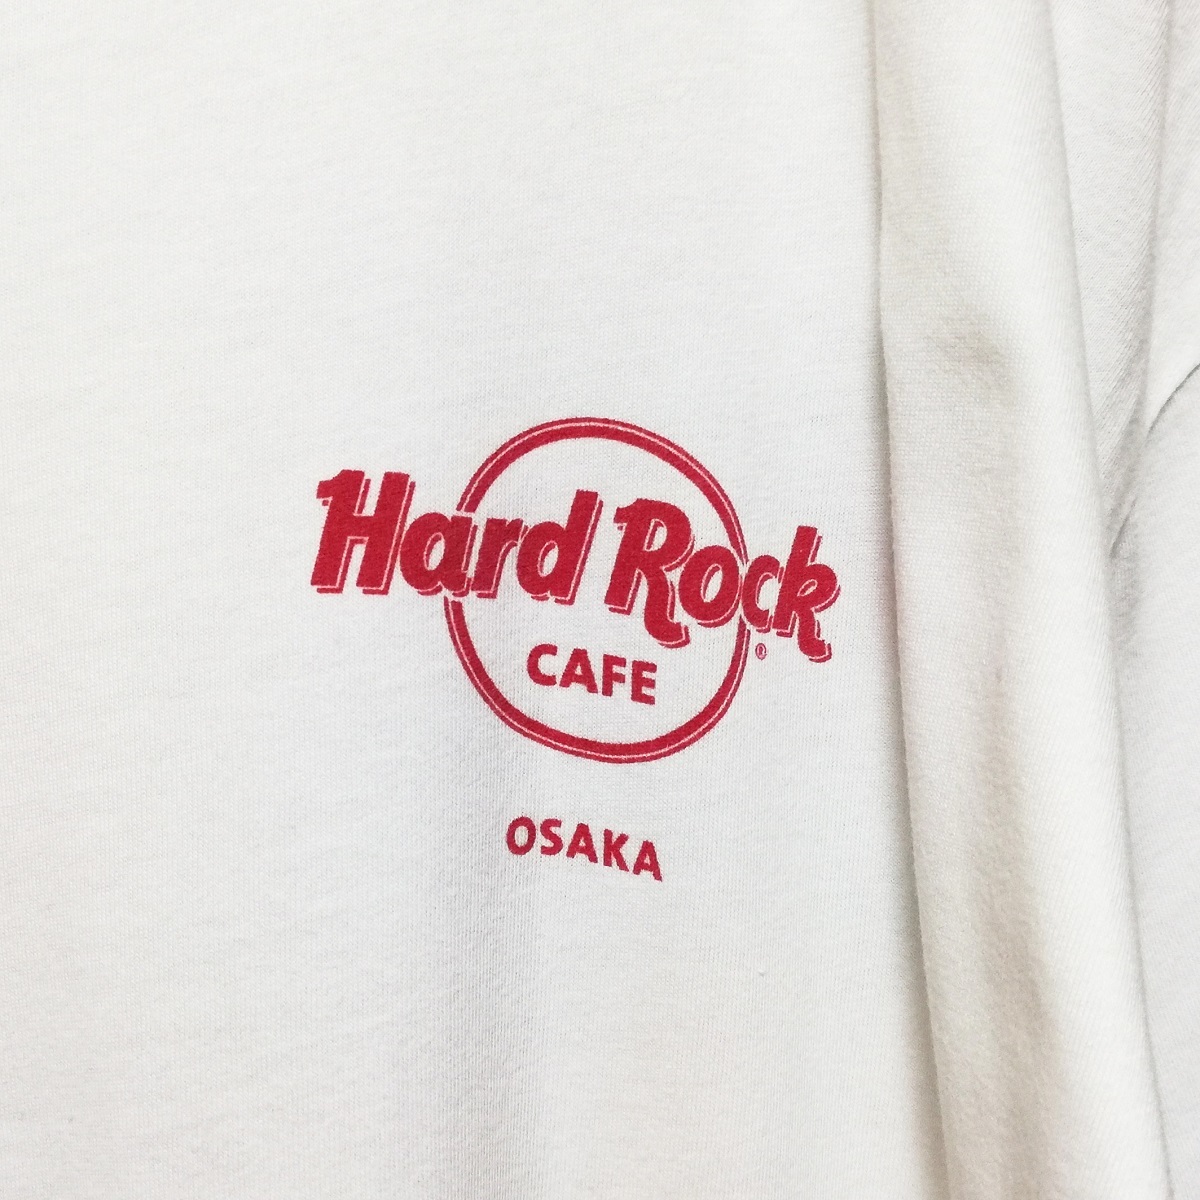 Hard Rock Cafe OSAKA ハードロックカフェ 大阪 限定 ロックンロール 戦国 武将 侍 メンズ 半袖 Tシャツ L サイズ 白 ホワイト 豊臣秀吉 ?_画像6